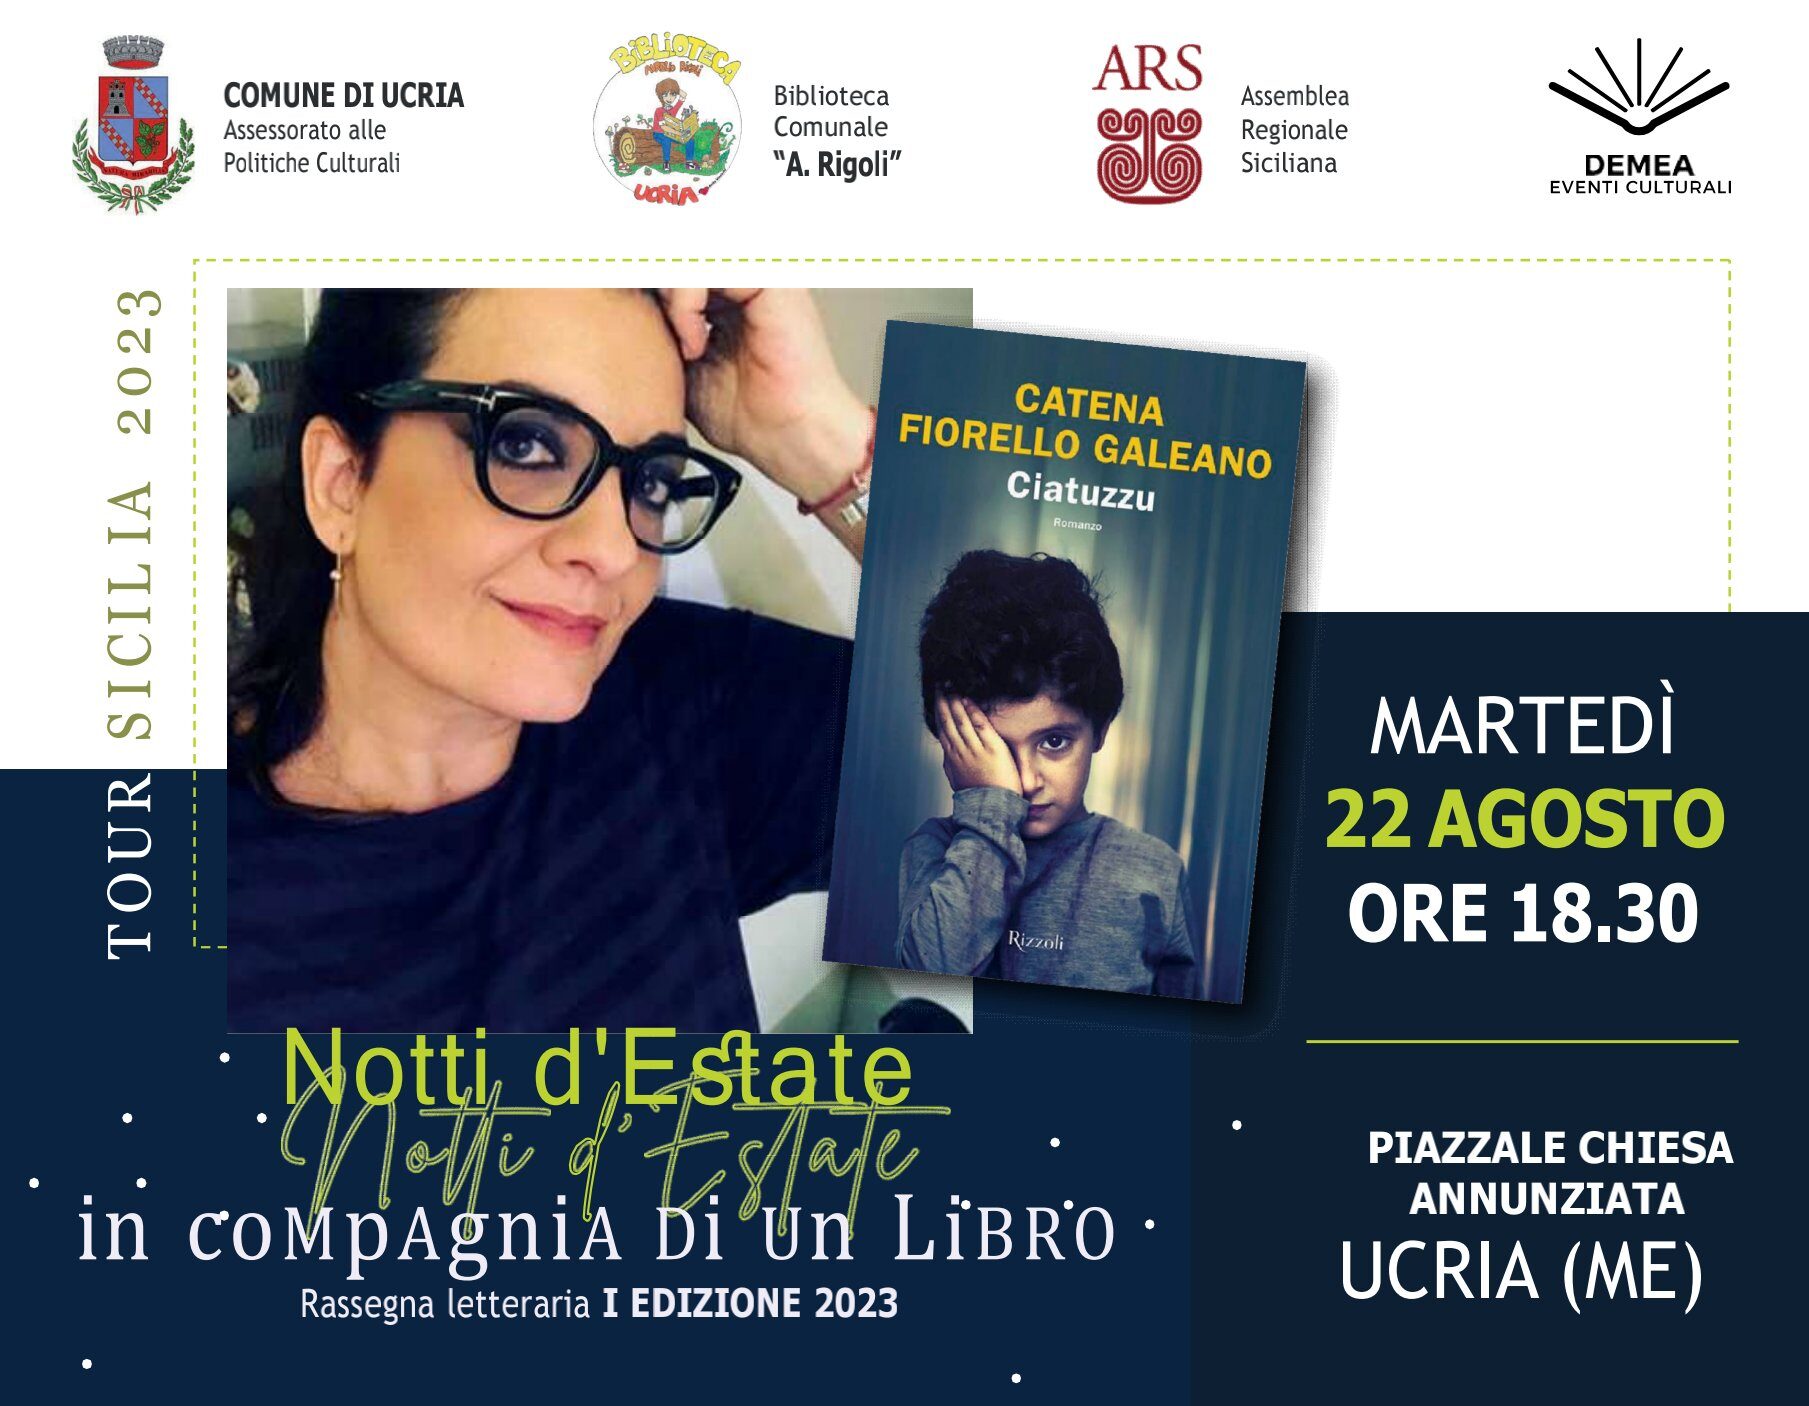 Ucria – Il prossimo 22 agosto incontro con Catena Fiorello Galeano, con il suo libro “Ciatuzzu”